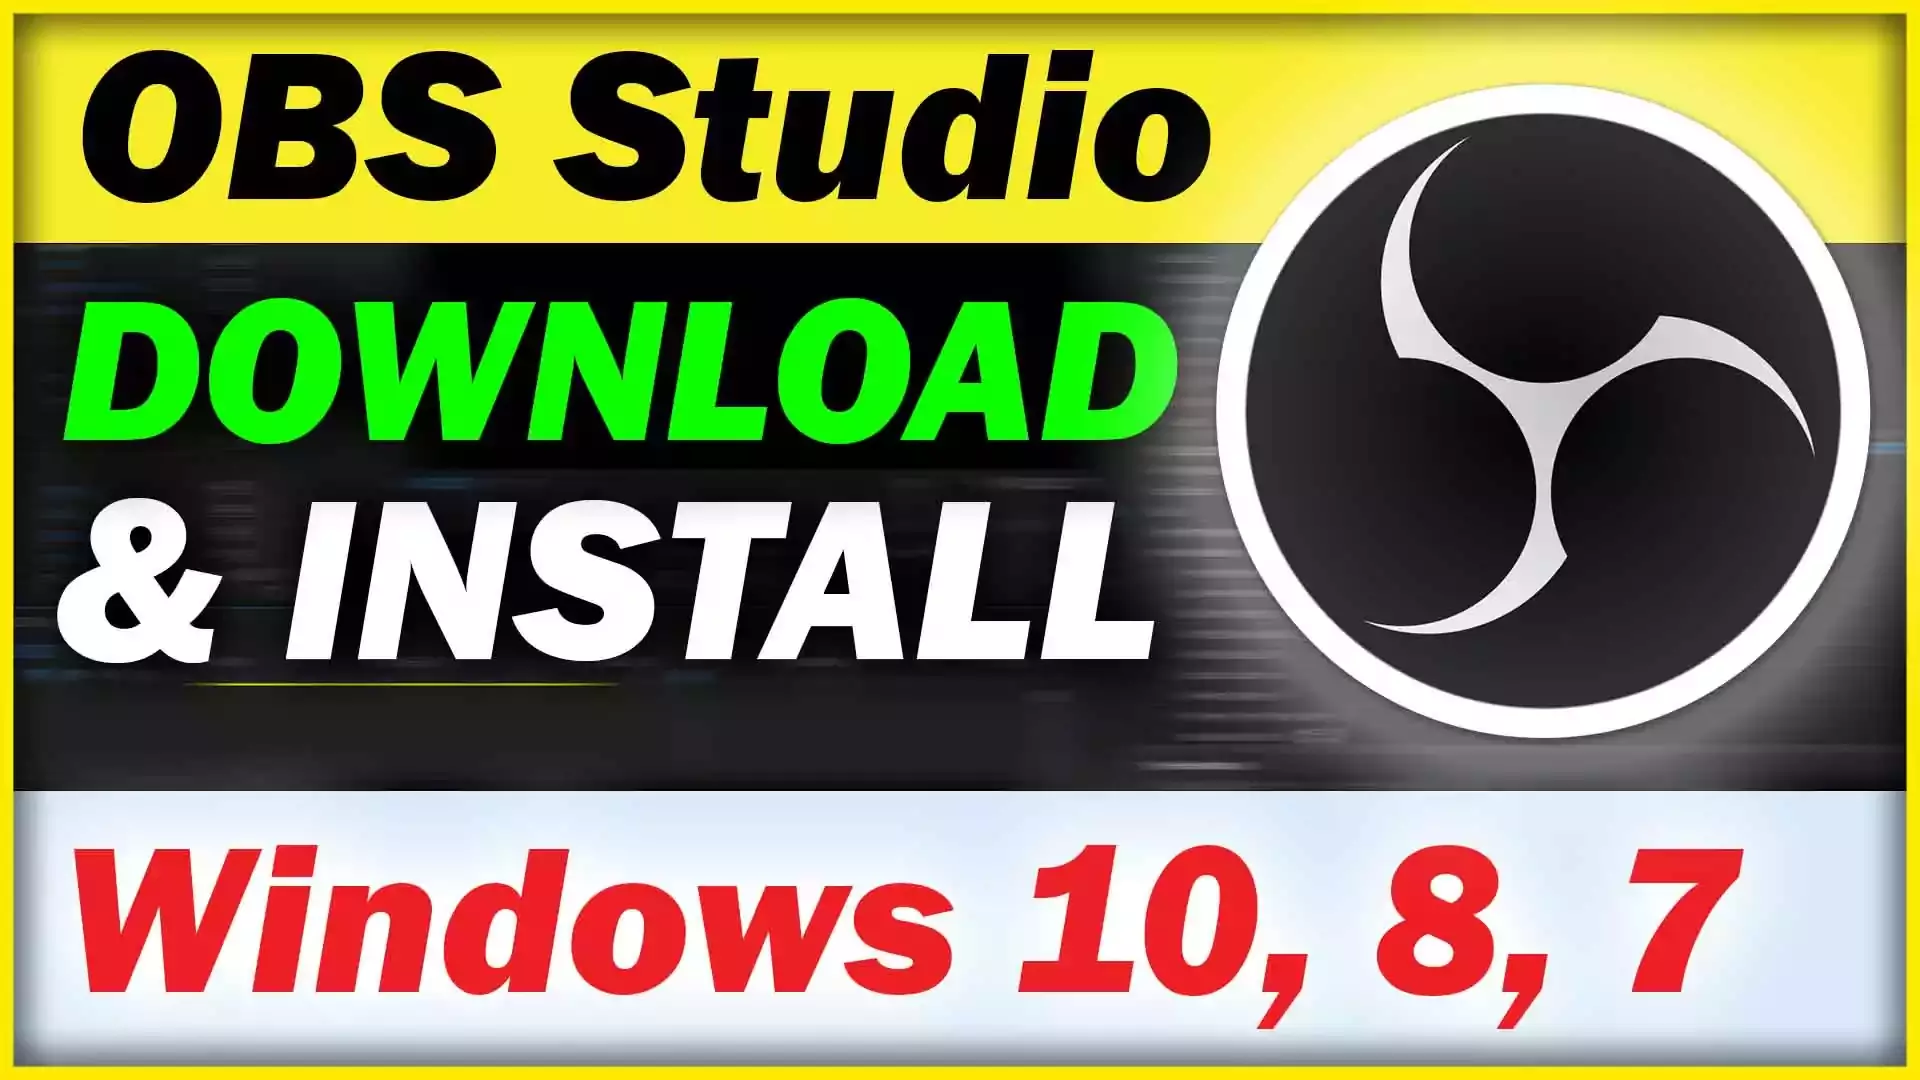 OBS Studio Windows 7 32 bit Download & Install 2022